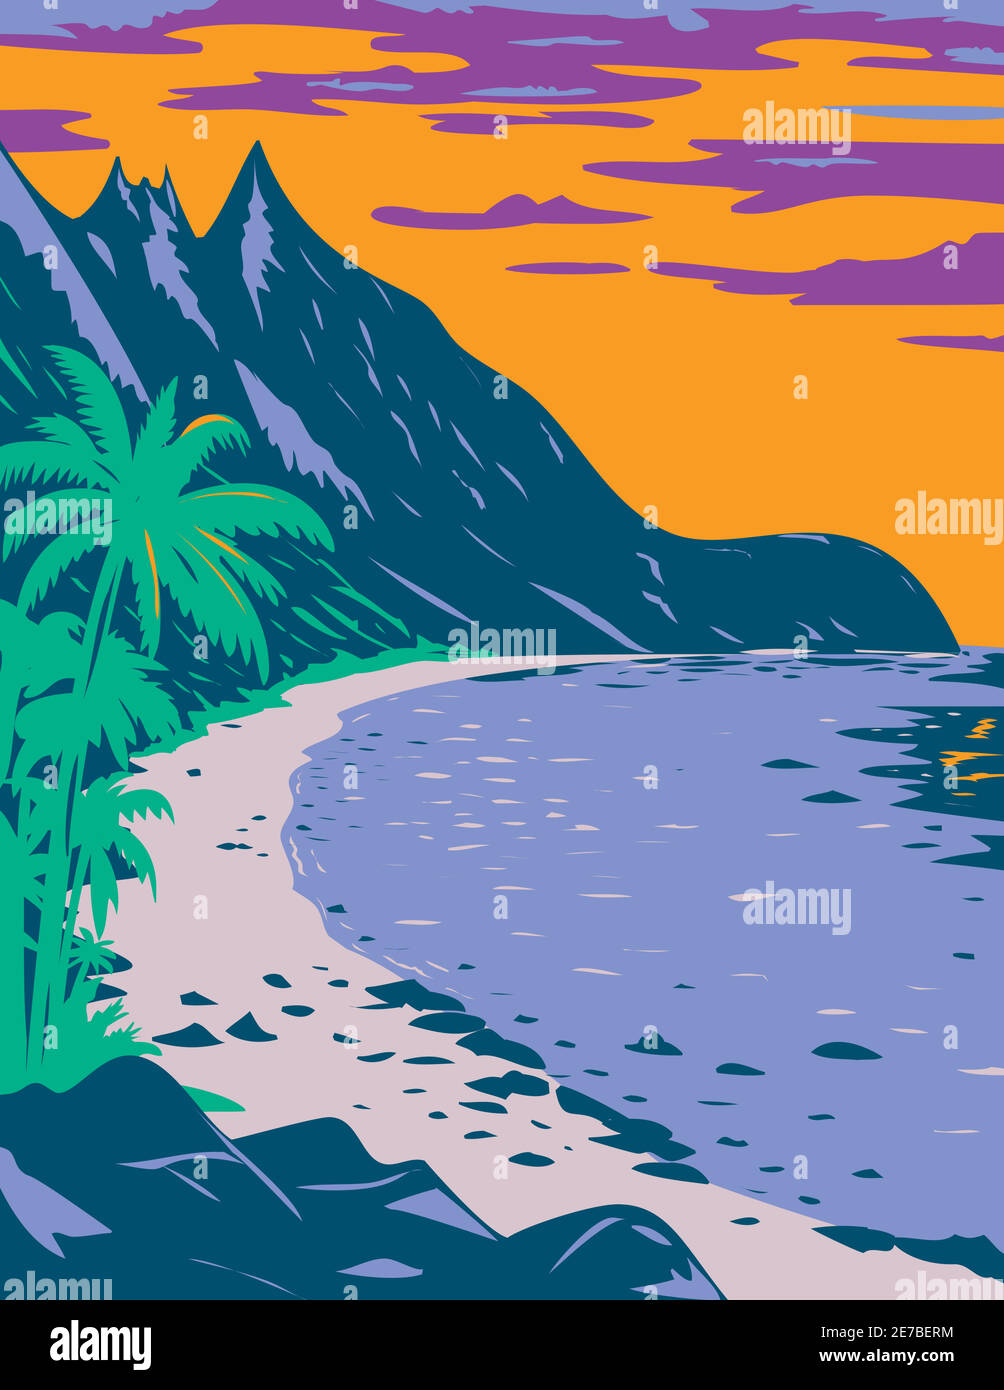 WPA Plakatkunst des Nationalparks von Amerikanisch-Samoa Ofu Strand, in den Vereinigten Staaten Gebiet von Amerikanisch-Samoa Insel Ofu, getan in den Arbeiten projec Stock Vektor